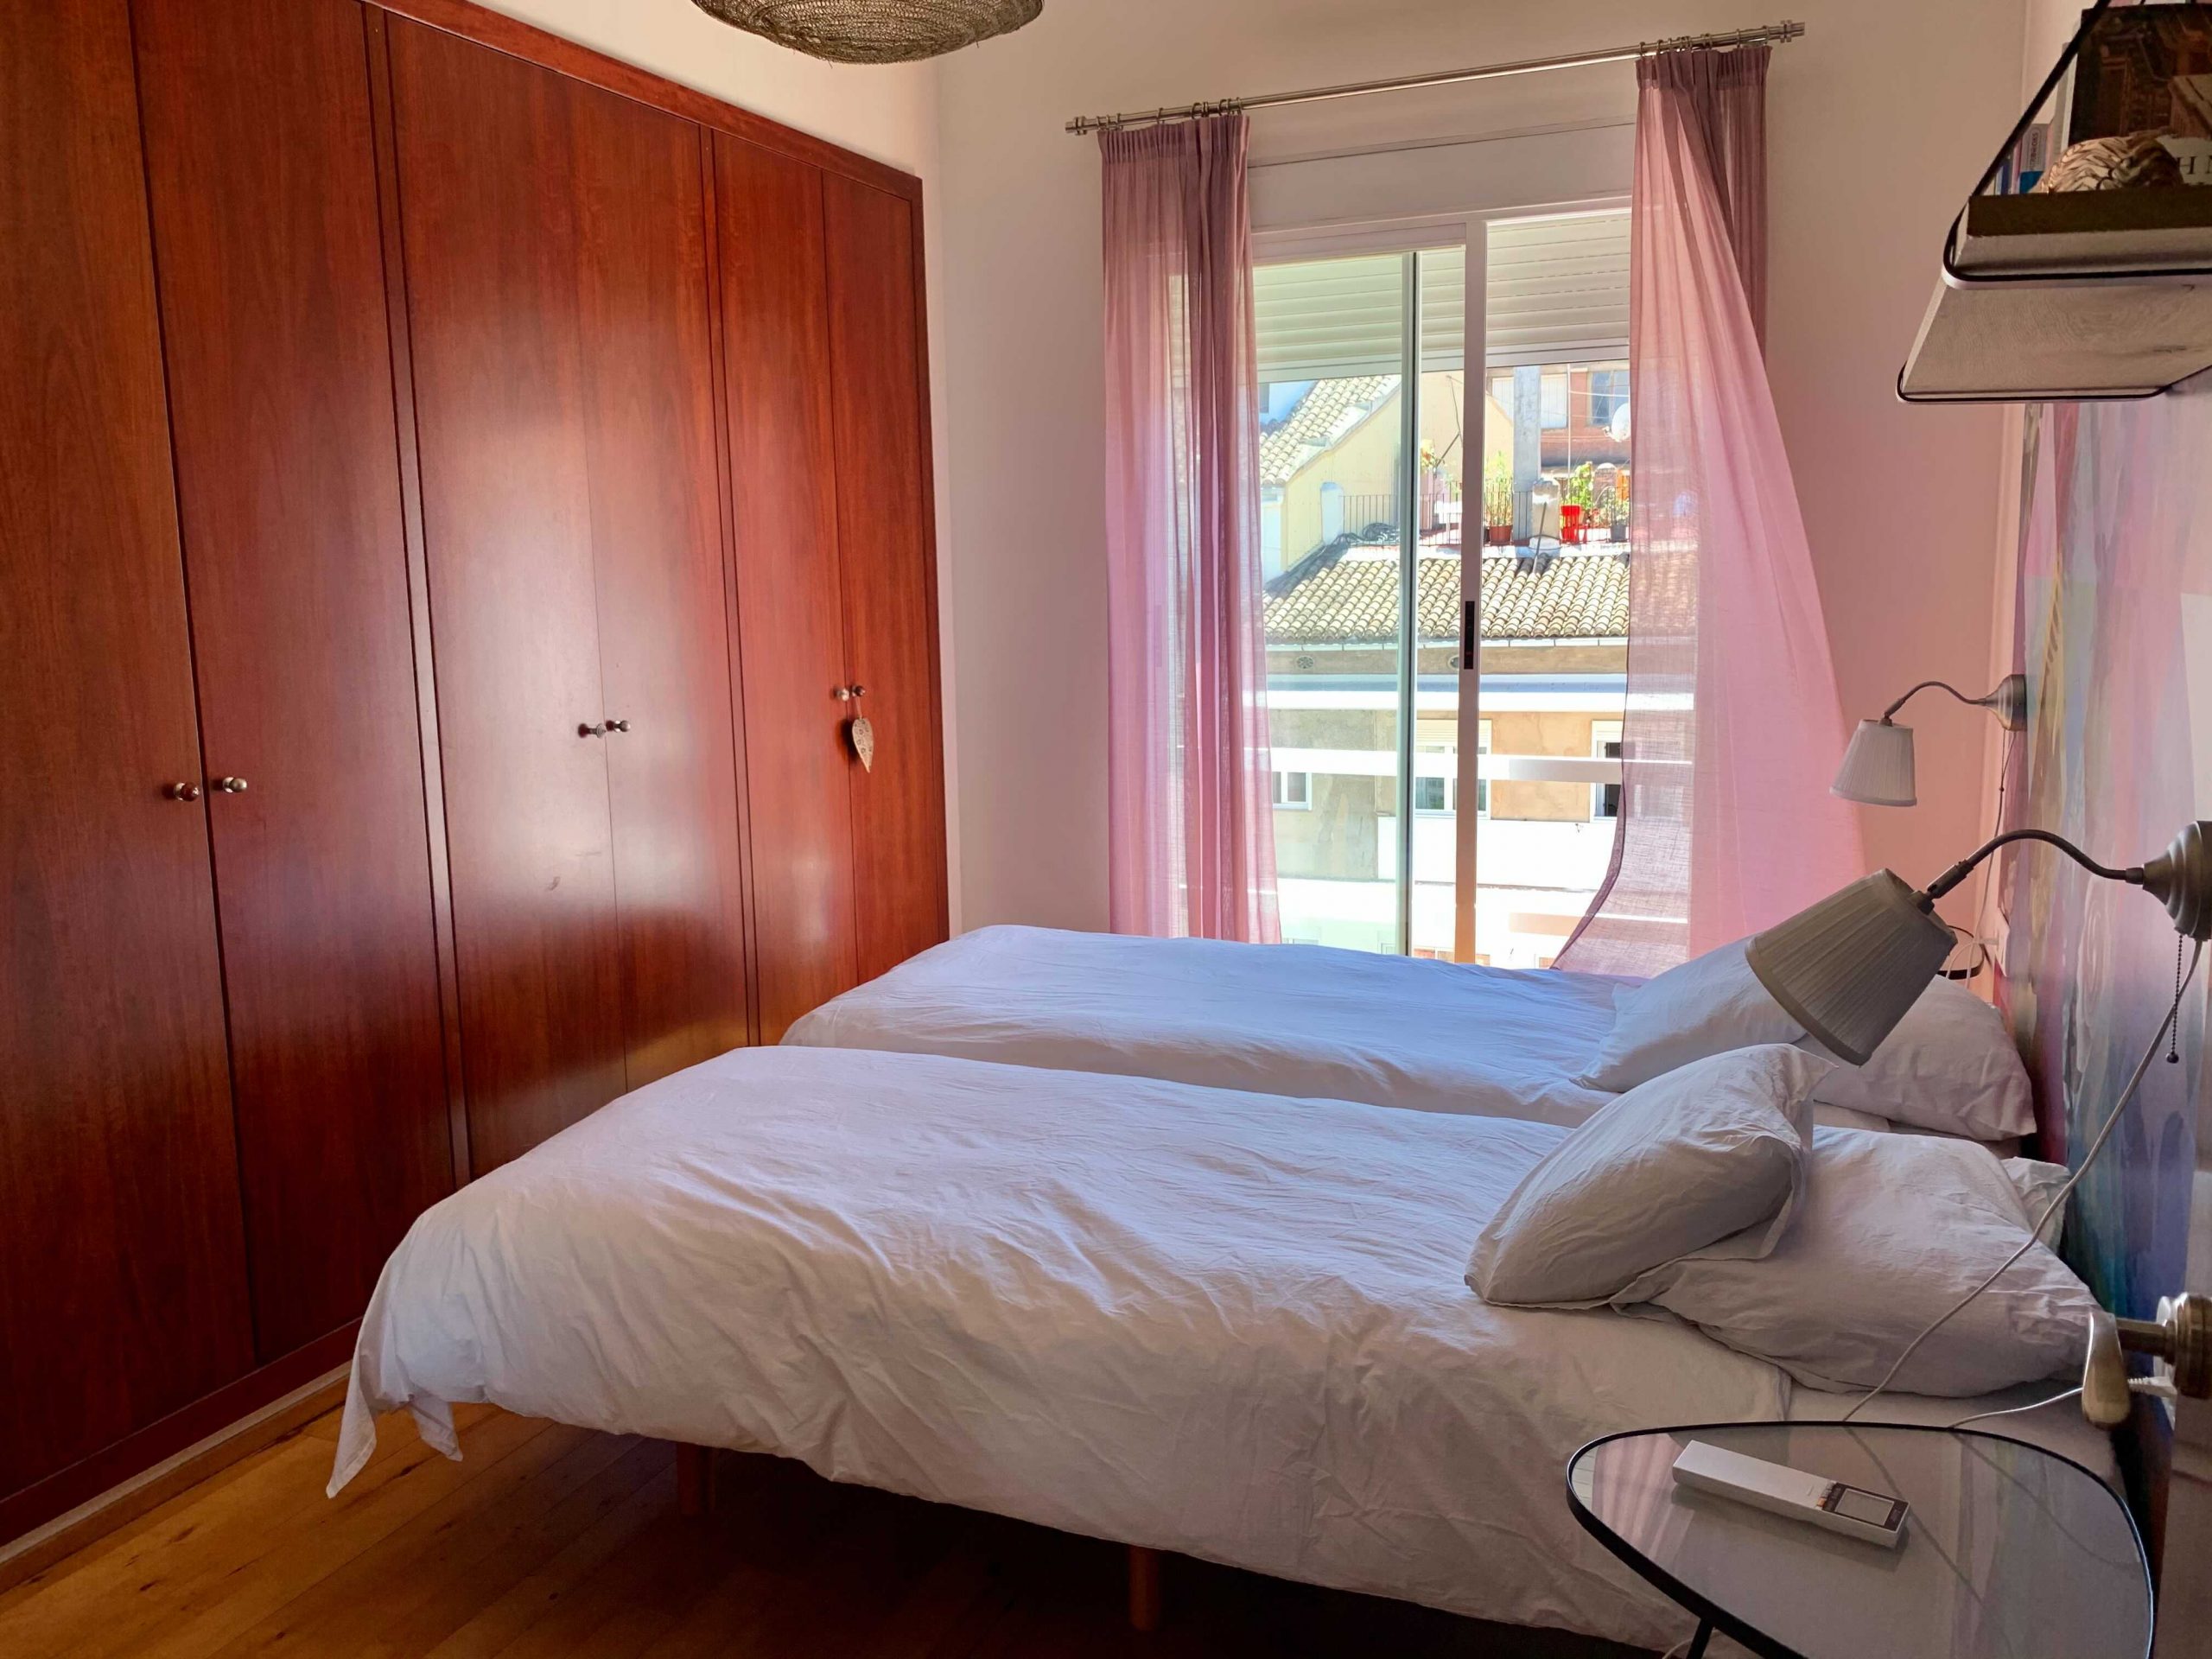 Mosen femenia - Entry ready expat housing in Valencia